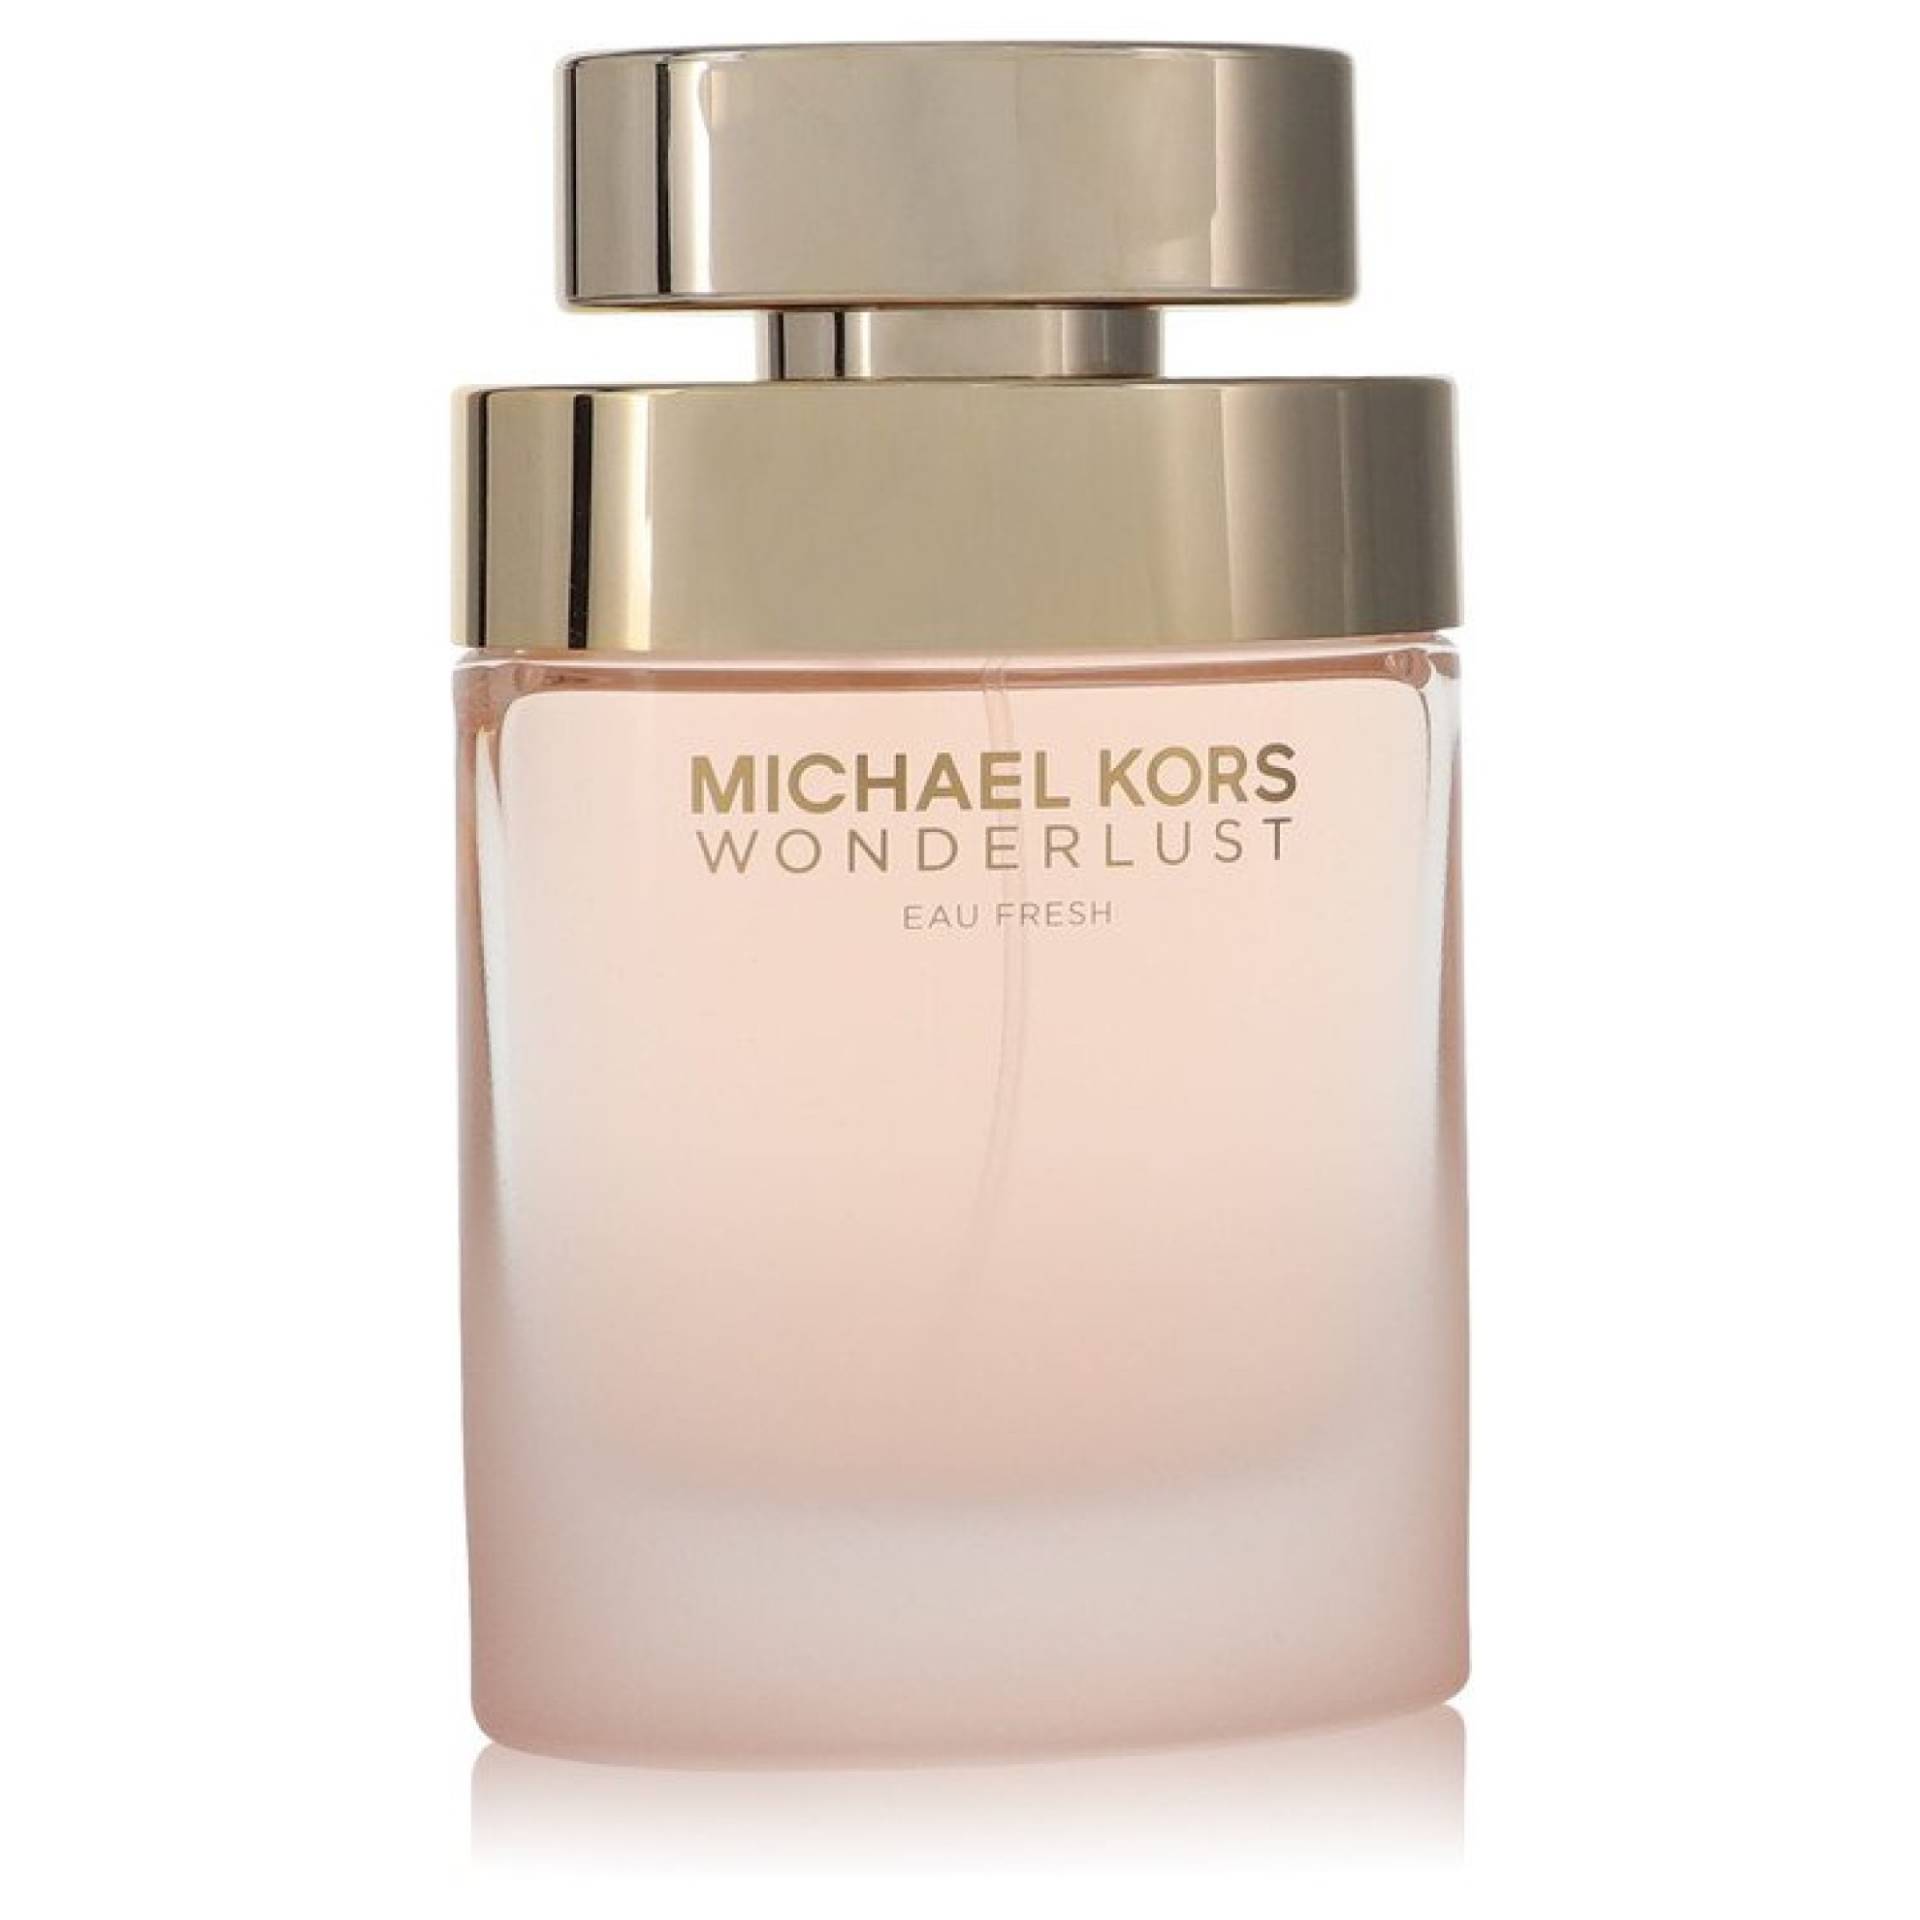 Michael Kors Wonderlust Eau Fresh Eau De Toilette Spray (unboxed) 101 ml von Michael Kors